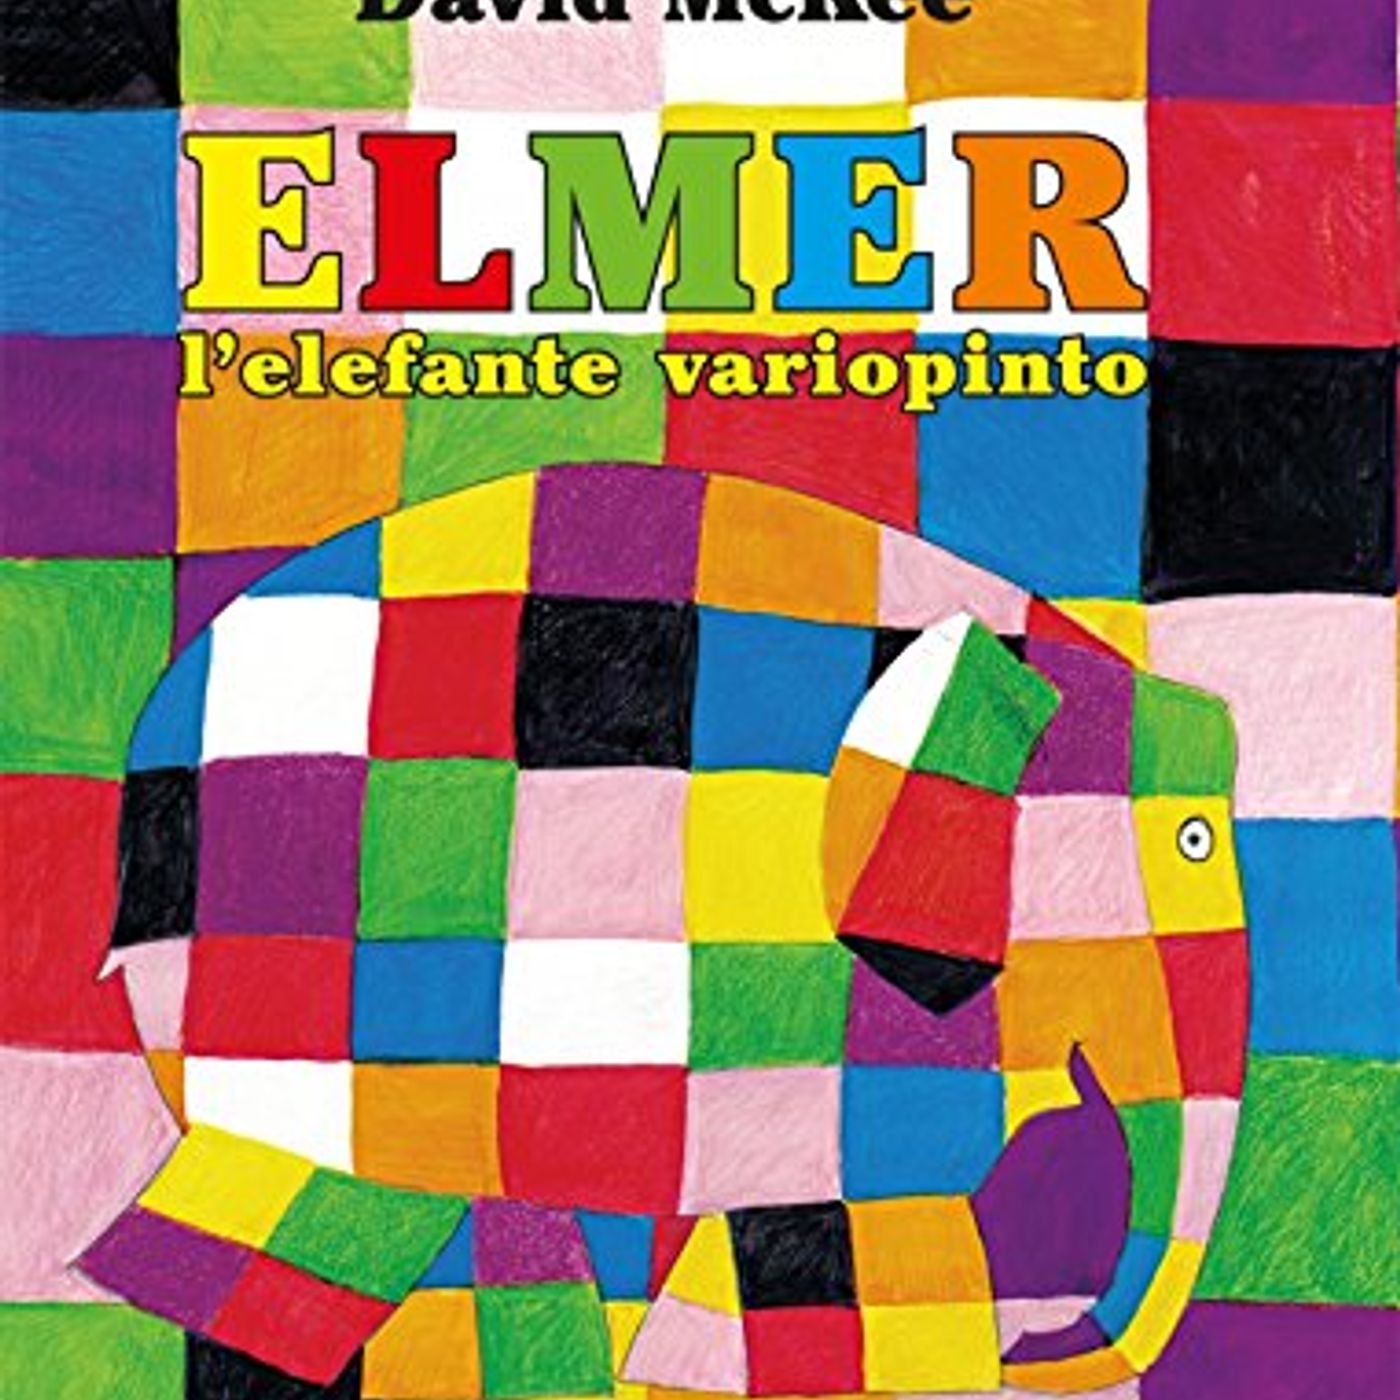 Audiolibri per bambini: Elmer l'elefante variopinto (David McKee)  www.radiogiochiecolori.it – AUDIOLIBRI PER BAMBINI – Podcast – Podtail